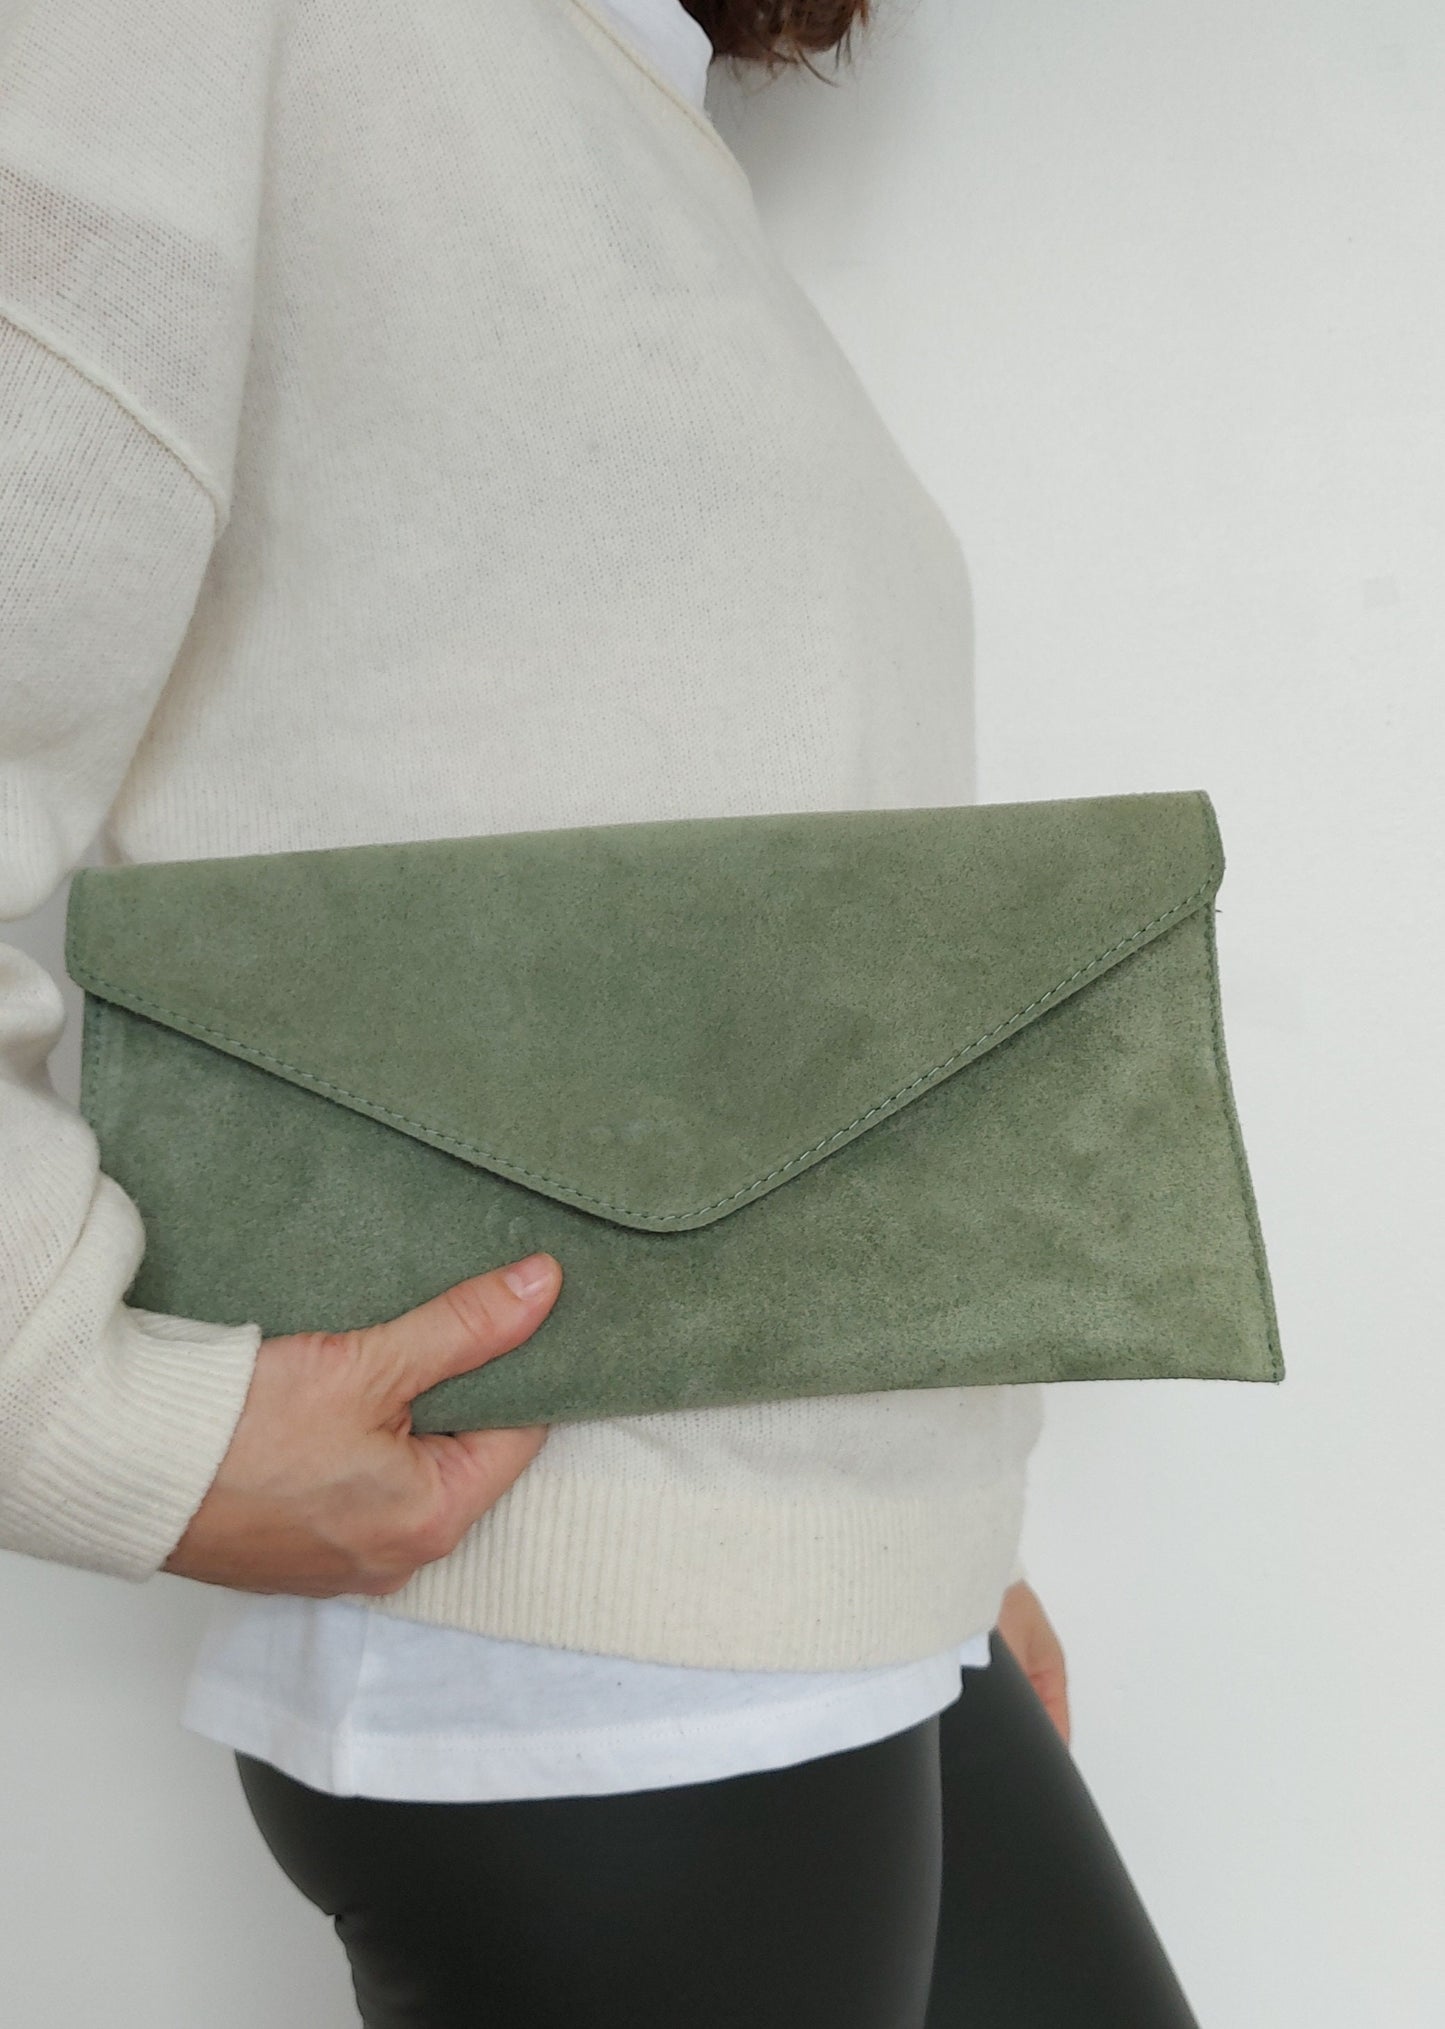 Sage Green Envelope Clutch Bag